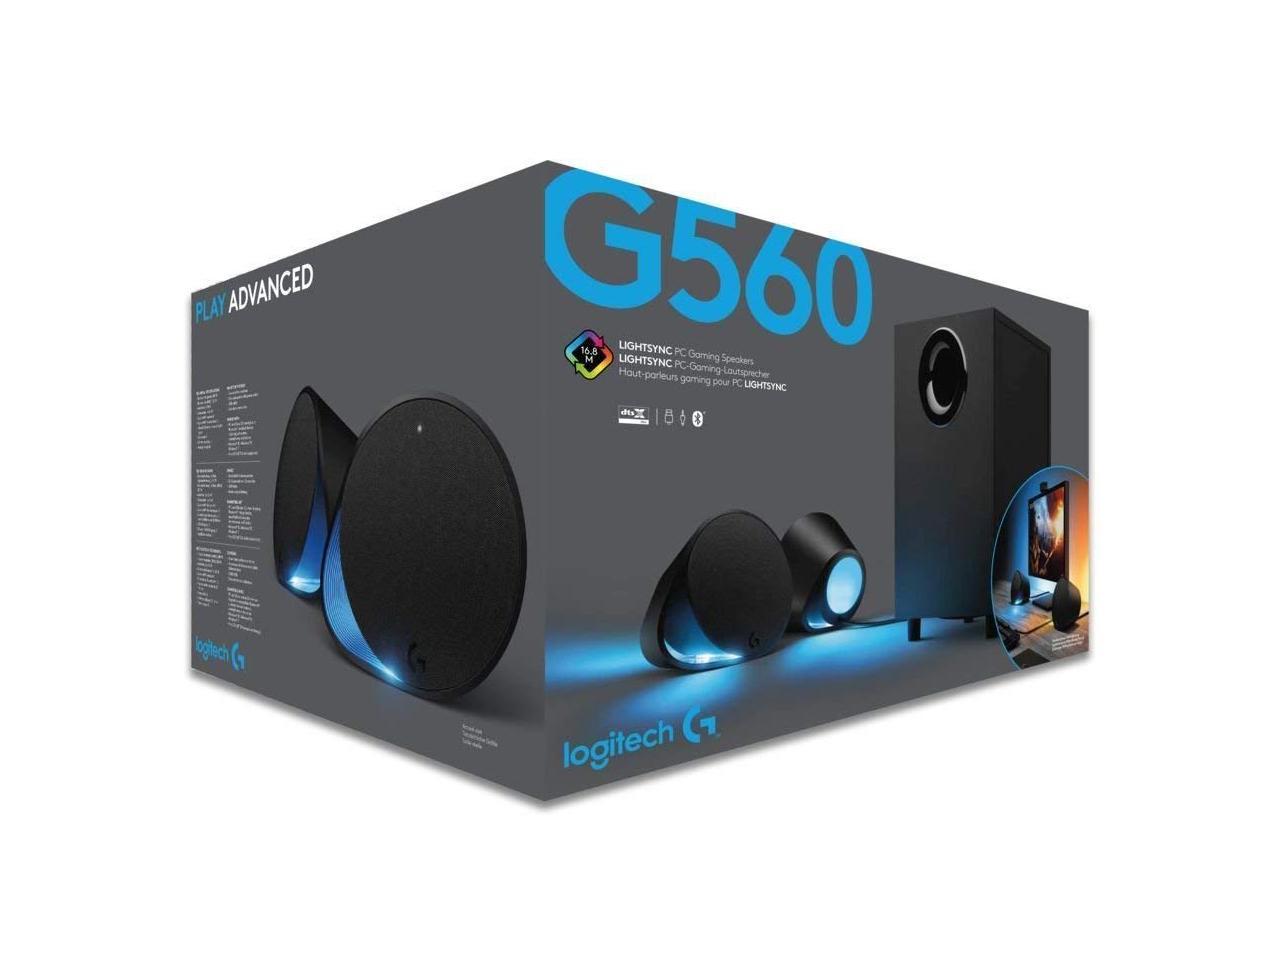 speaker g560